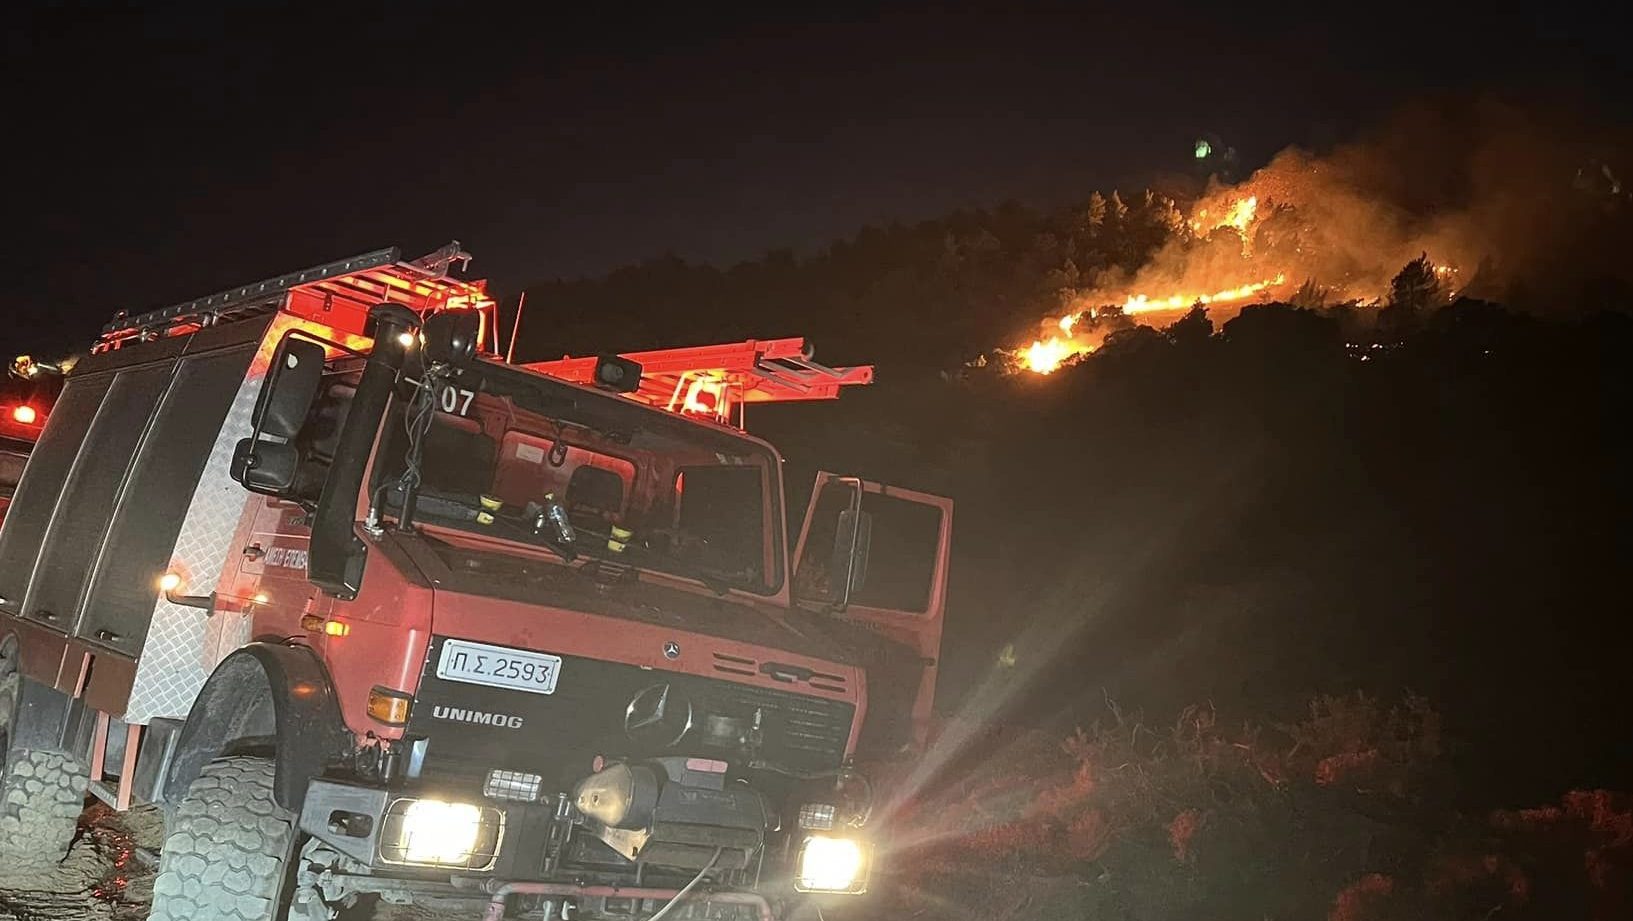 Σπανός για τις φωτιές στη Βοιωτία: Δύσκολη νύχτα για τα Δερβενοχώρια, στο Καπαρέλλι αντιμετωπίζεται επιτυχώς